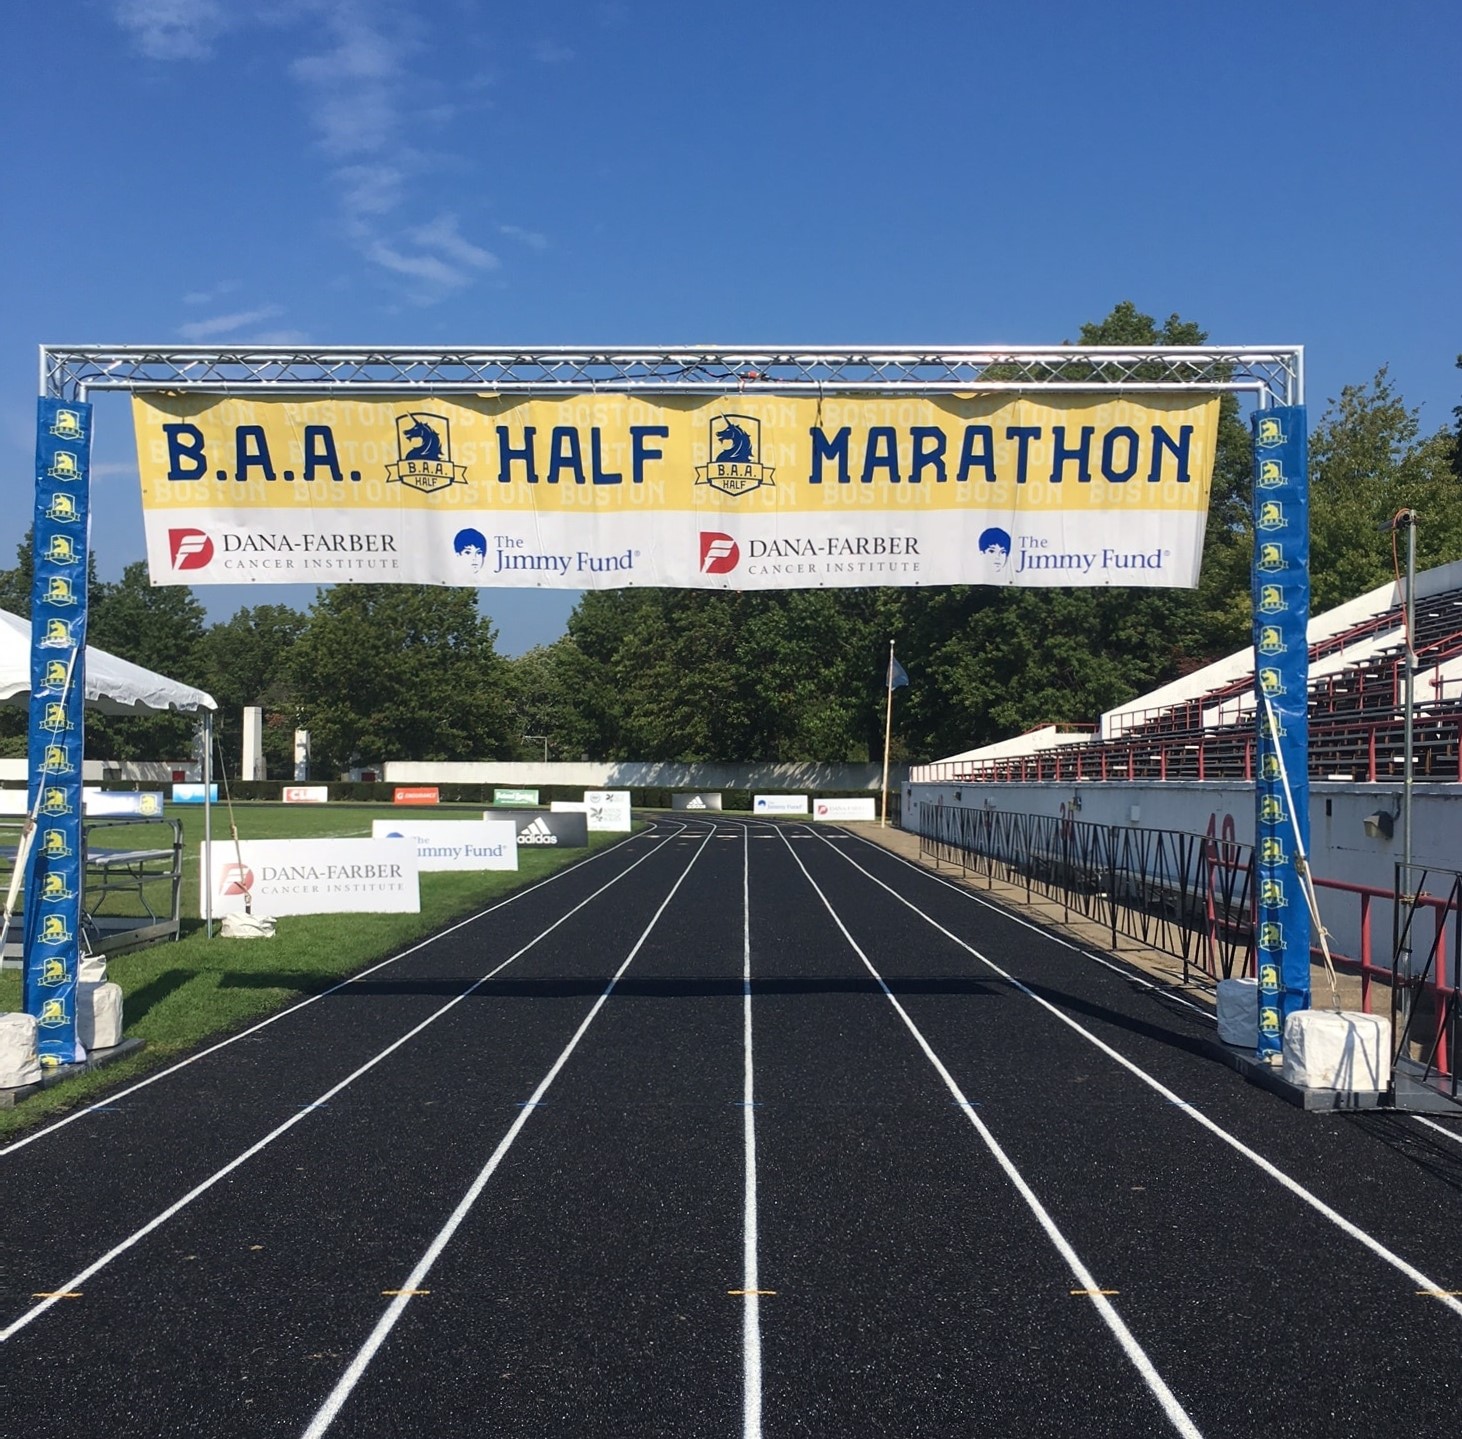 BAA Half Marathon - Finish Truss Signage